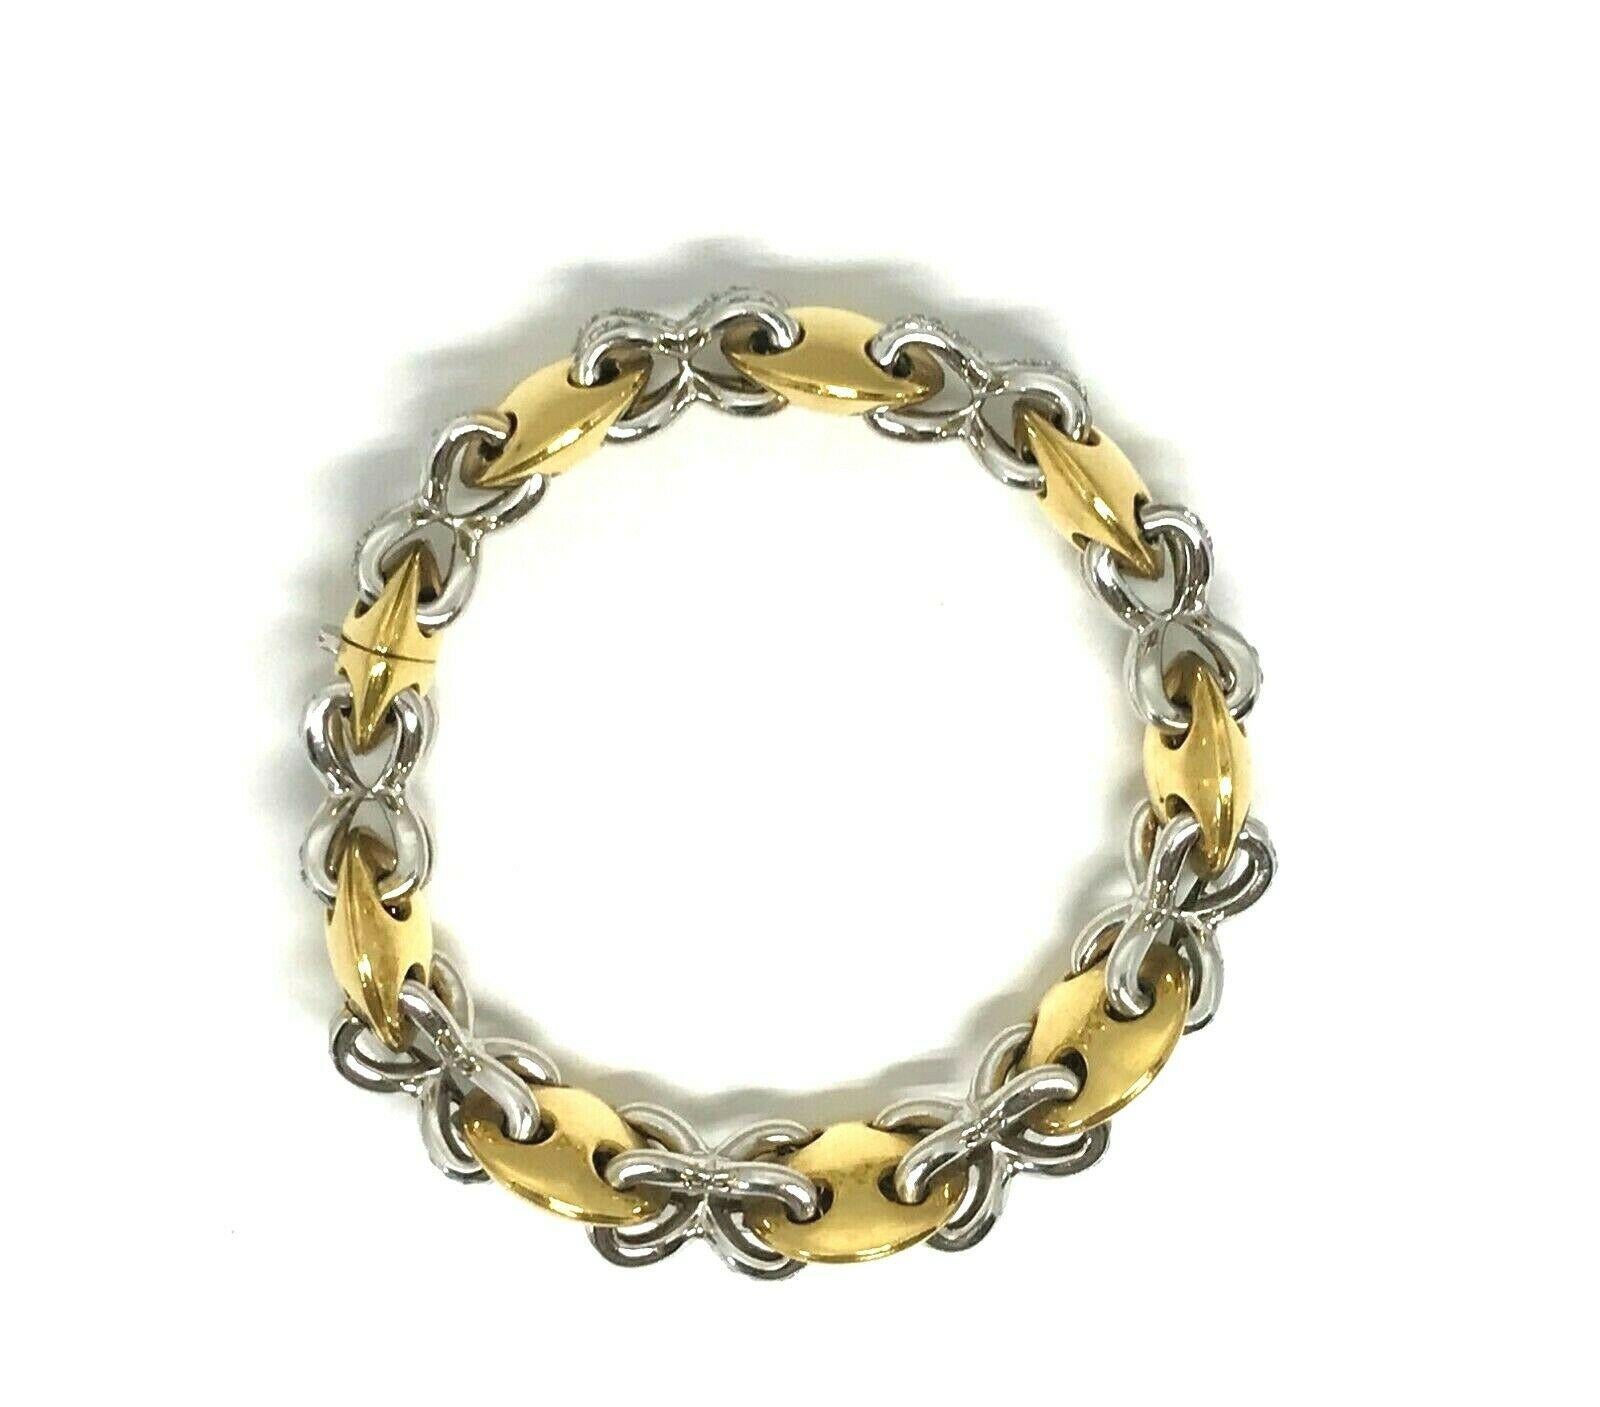 Vintage (c. 1980) bracelet en or 18k et diamants. Composé de formes de lentilles convexes en or jaune 18k reliées par des liens en or blanc 18k et diamants. Les diamants sont de taille ronde et brillante, de couleur G-H et de pureté VS1. Le poids